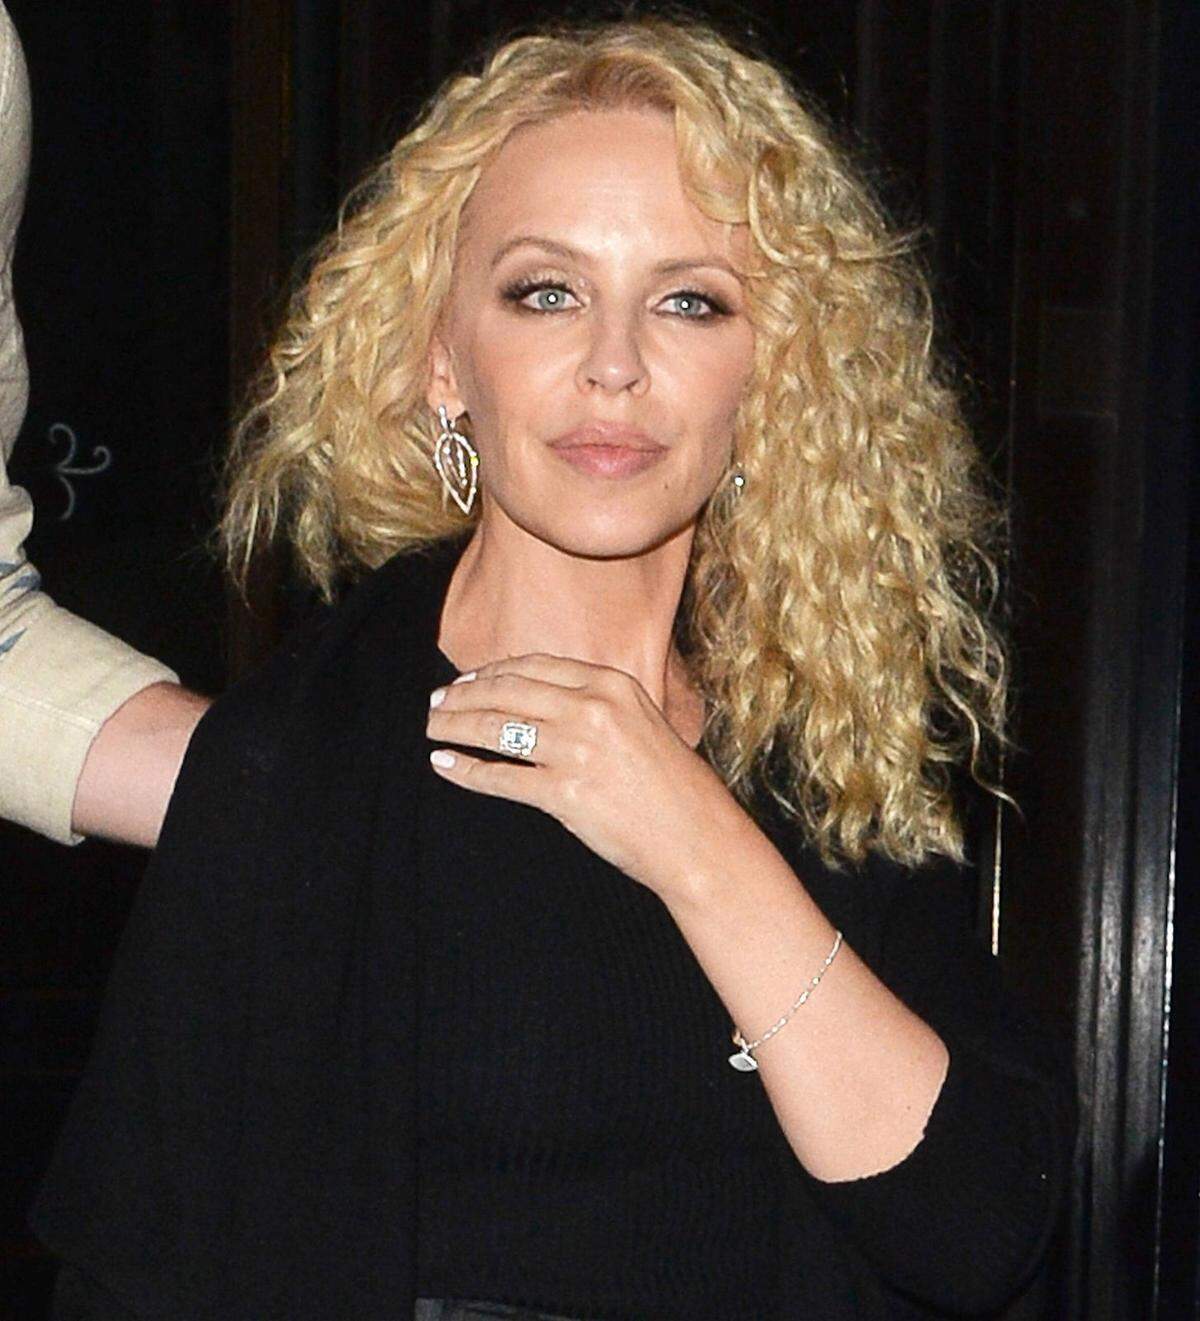 Ein ganz ähnliches Exemplar trägt auch Sängerin Kylie Minogue, die seit Jänner 2016 mit Joshua Sasse verlobt ist.